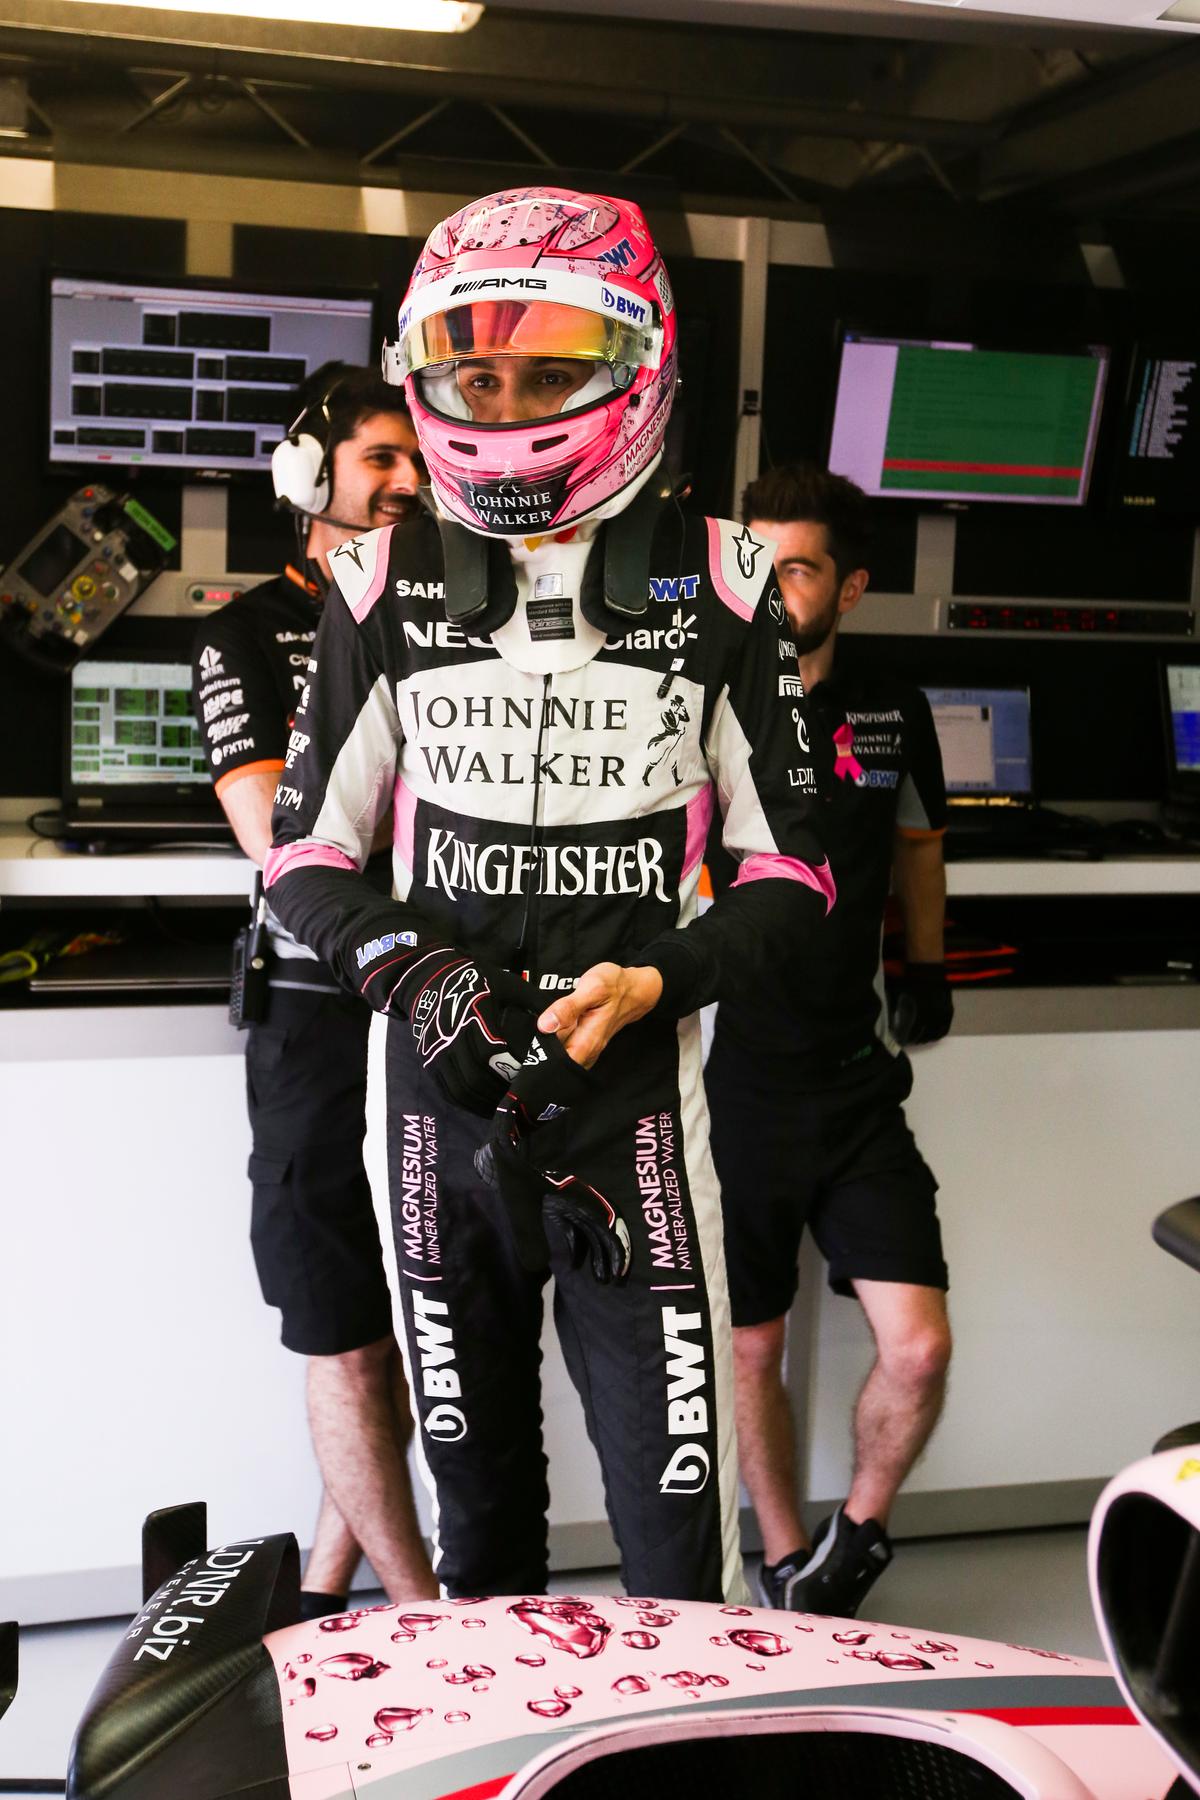 Esteban Ocon, Force India F1 driver, 2017 overalls.